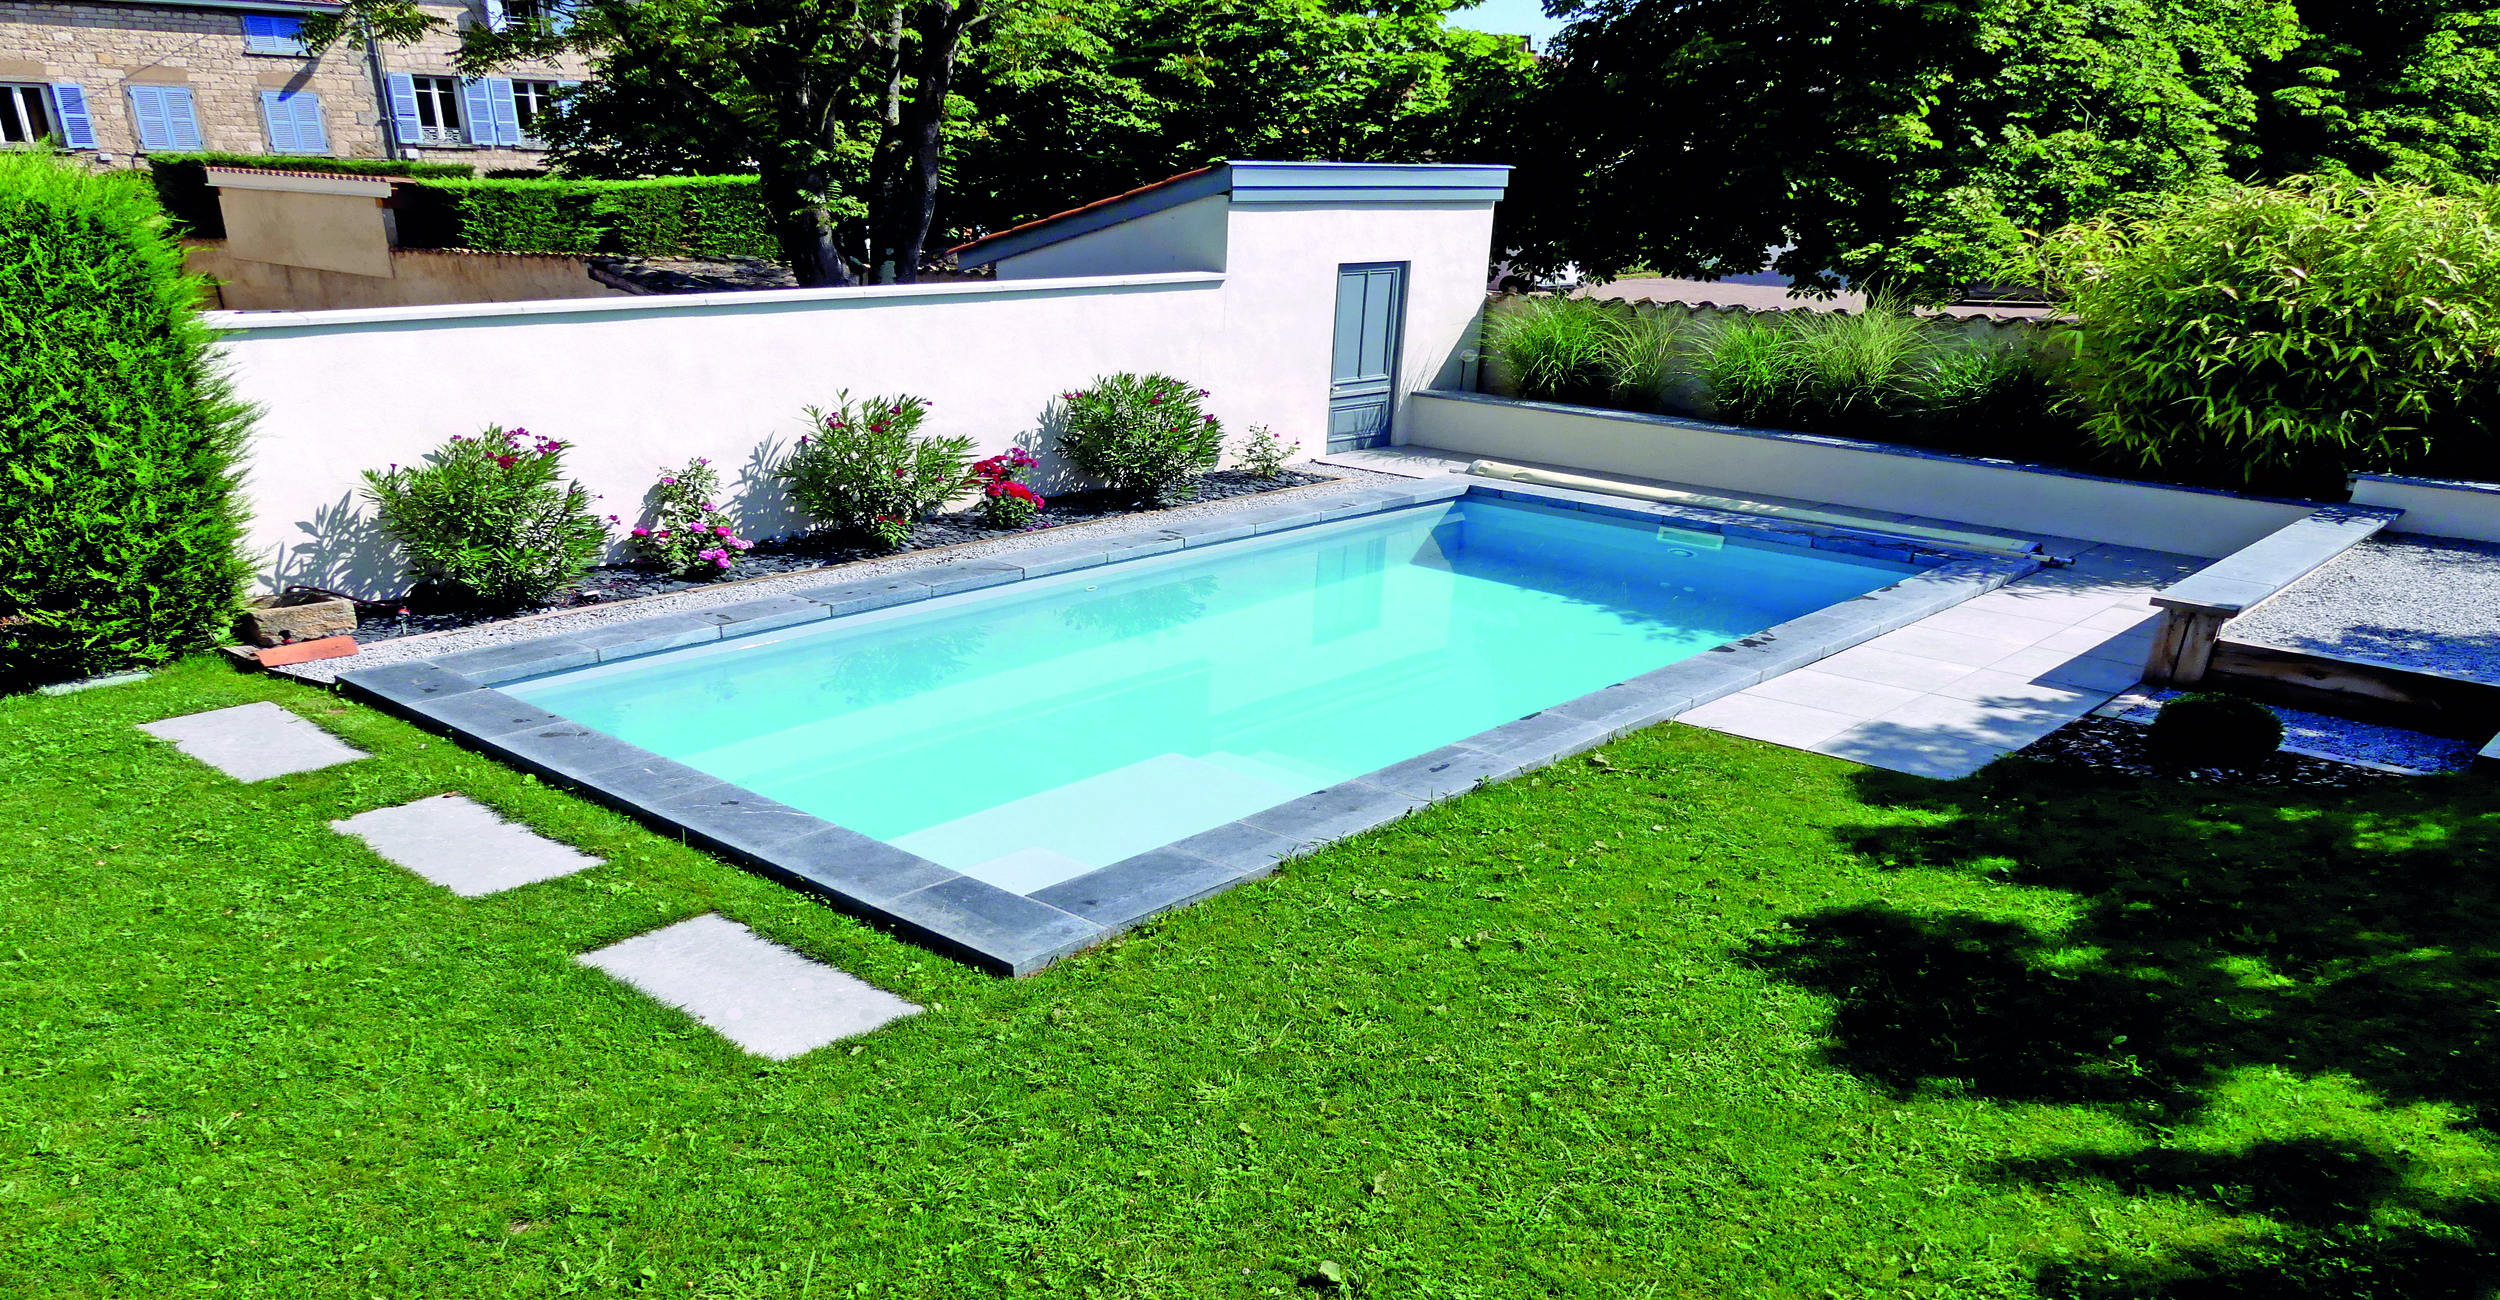 Pool Star Tunisia - Installer un ou plusieurs skimmers à la construction de  votre piscine est un geste essentiel pour assurer la propreté de l'eau du  bassin tout au long de la